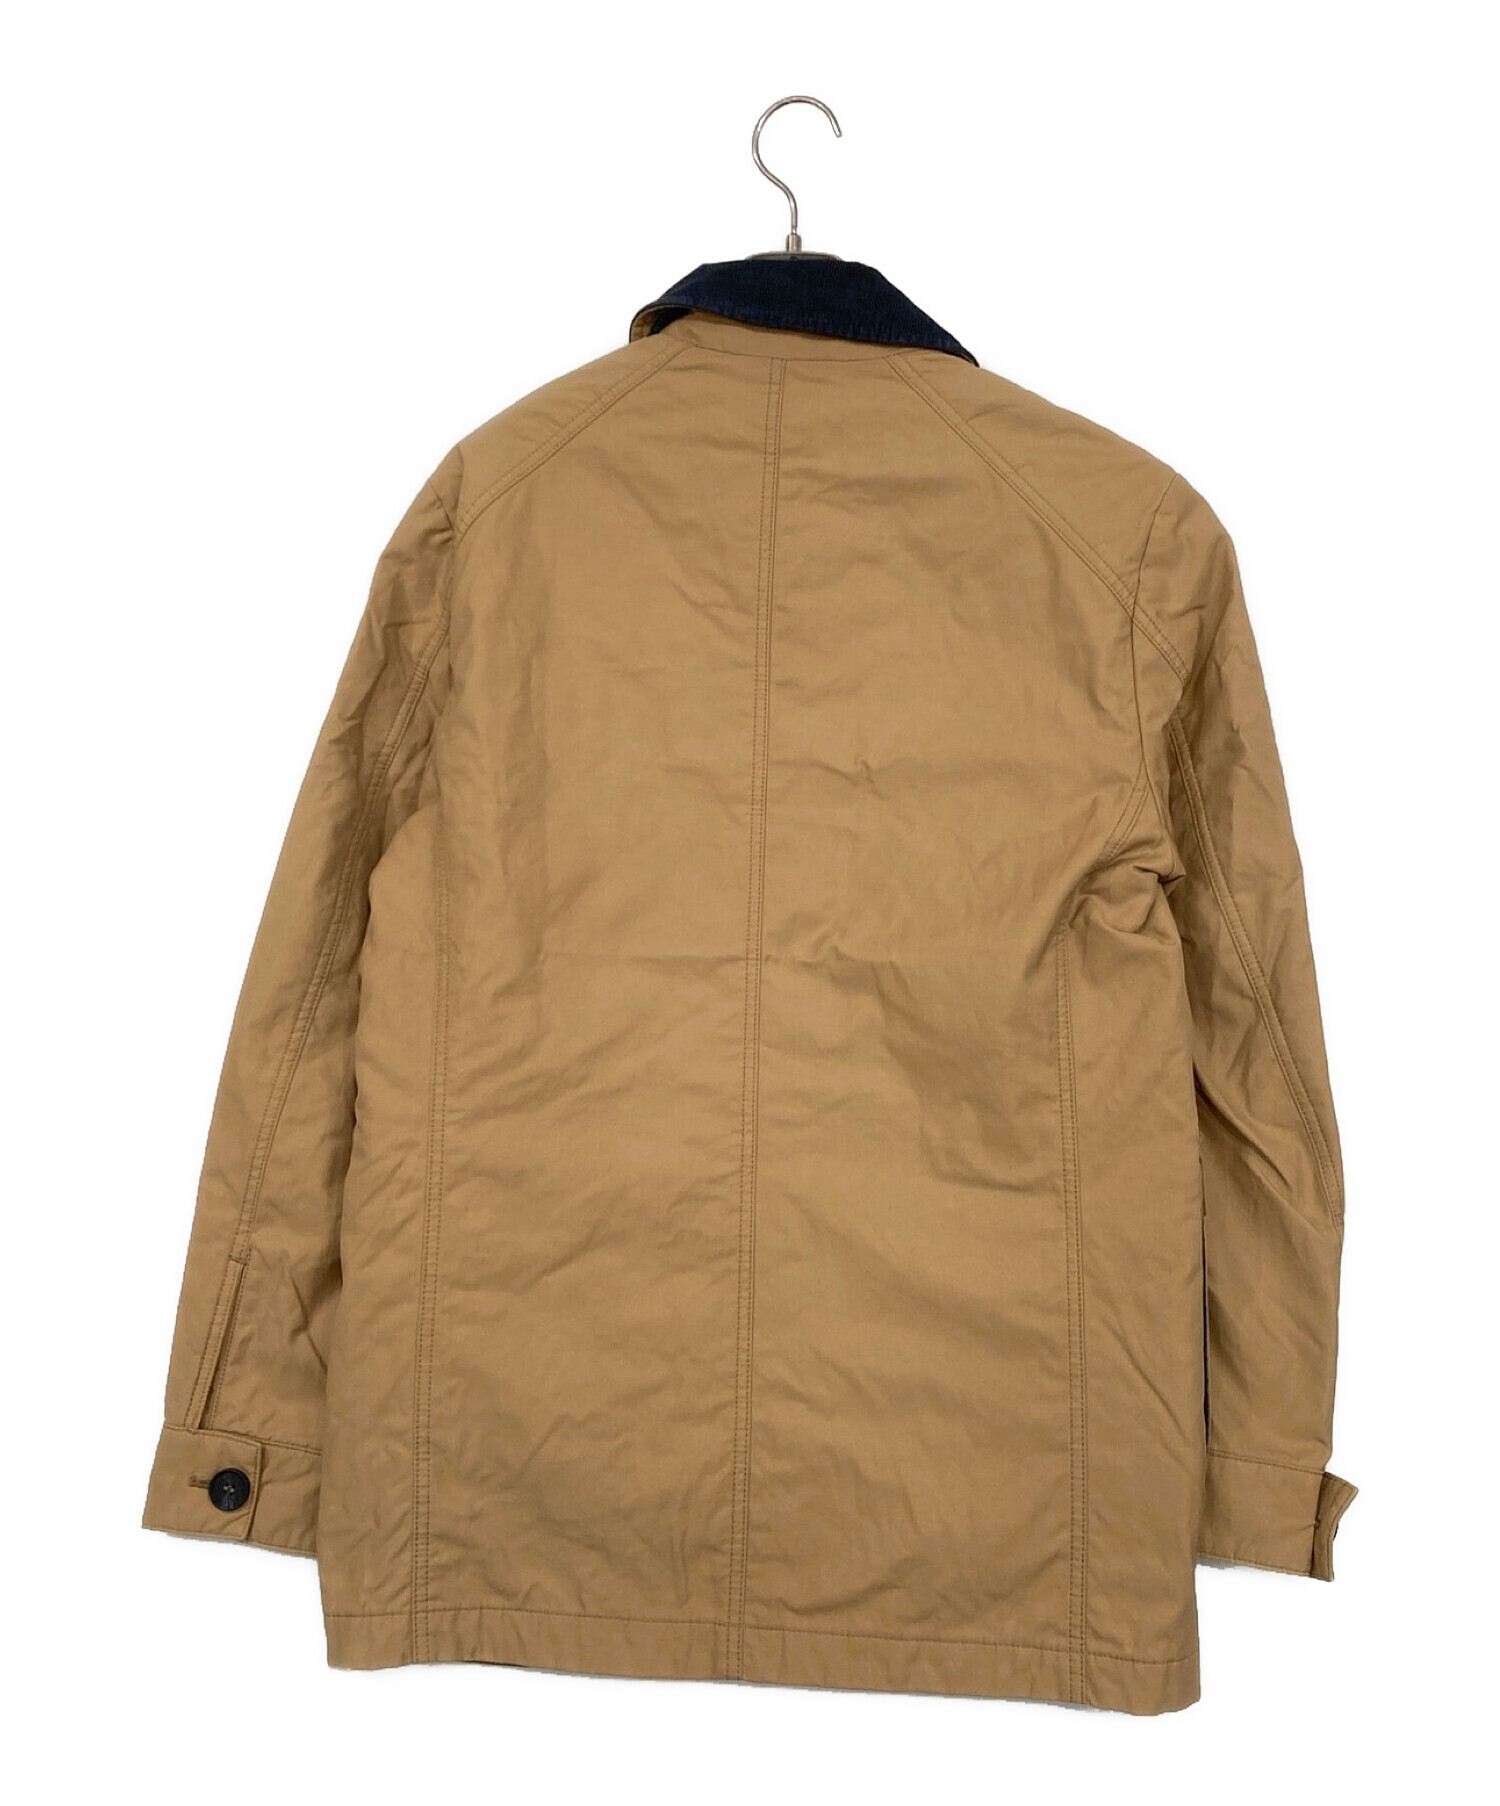 カラーブラウンbrook padded jacket ブラウンサイズ①